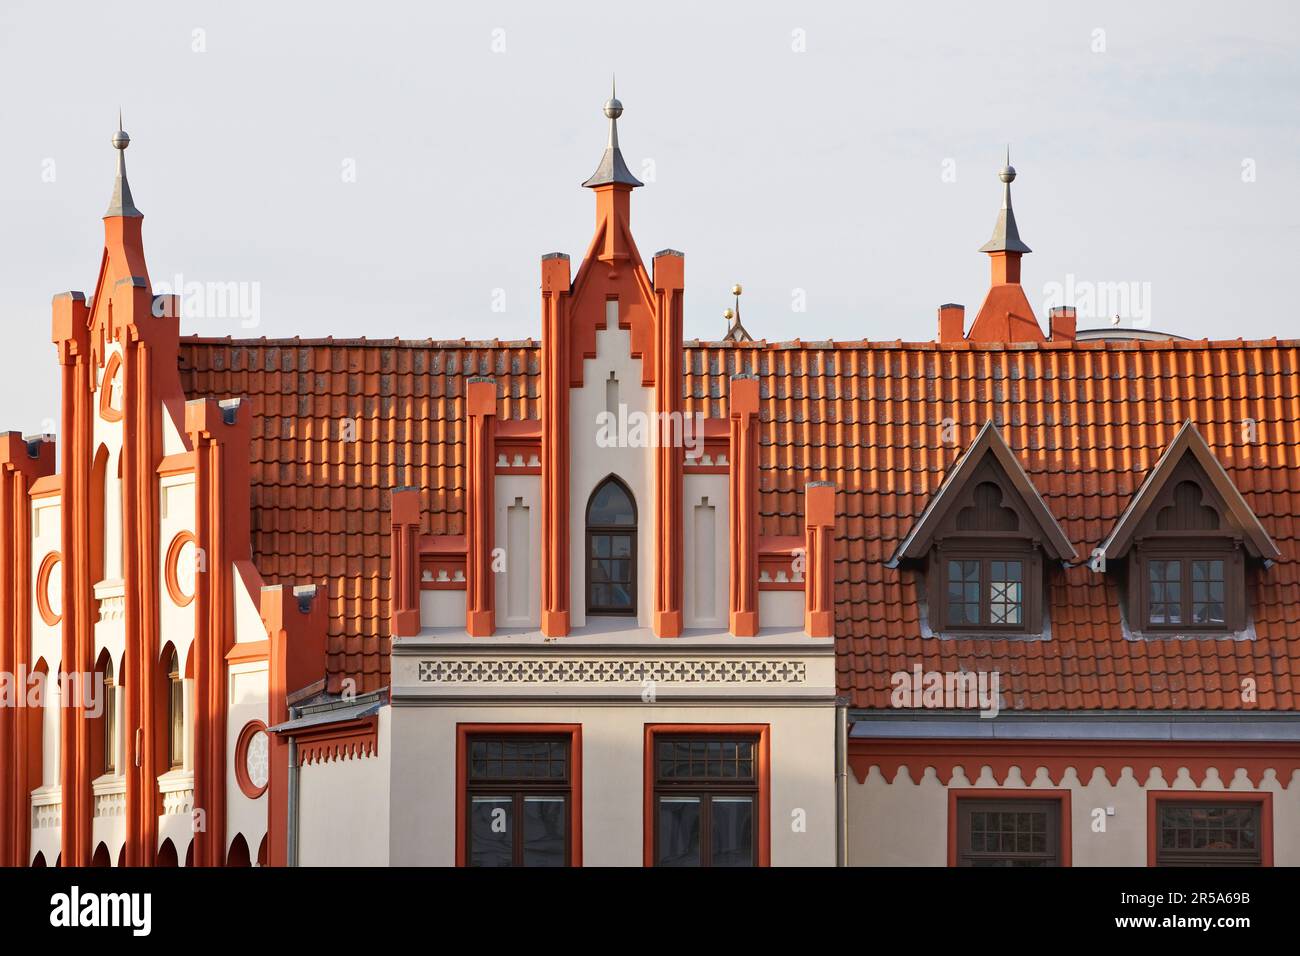 Giebelhaus auf dem Markt, Deutschland, Mecklenburg-Vorpommern, Wismar Stockfoto